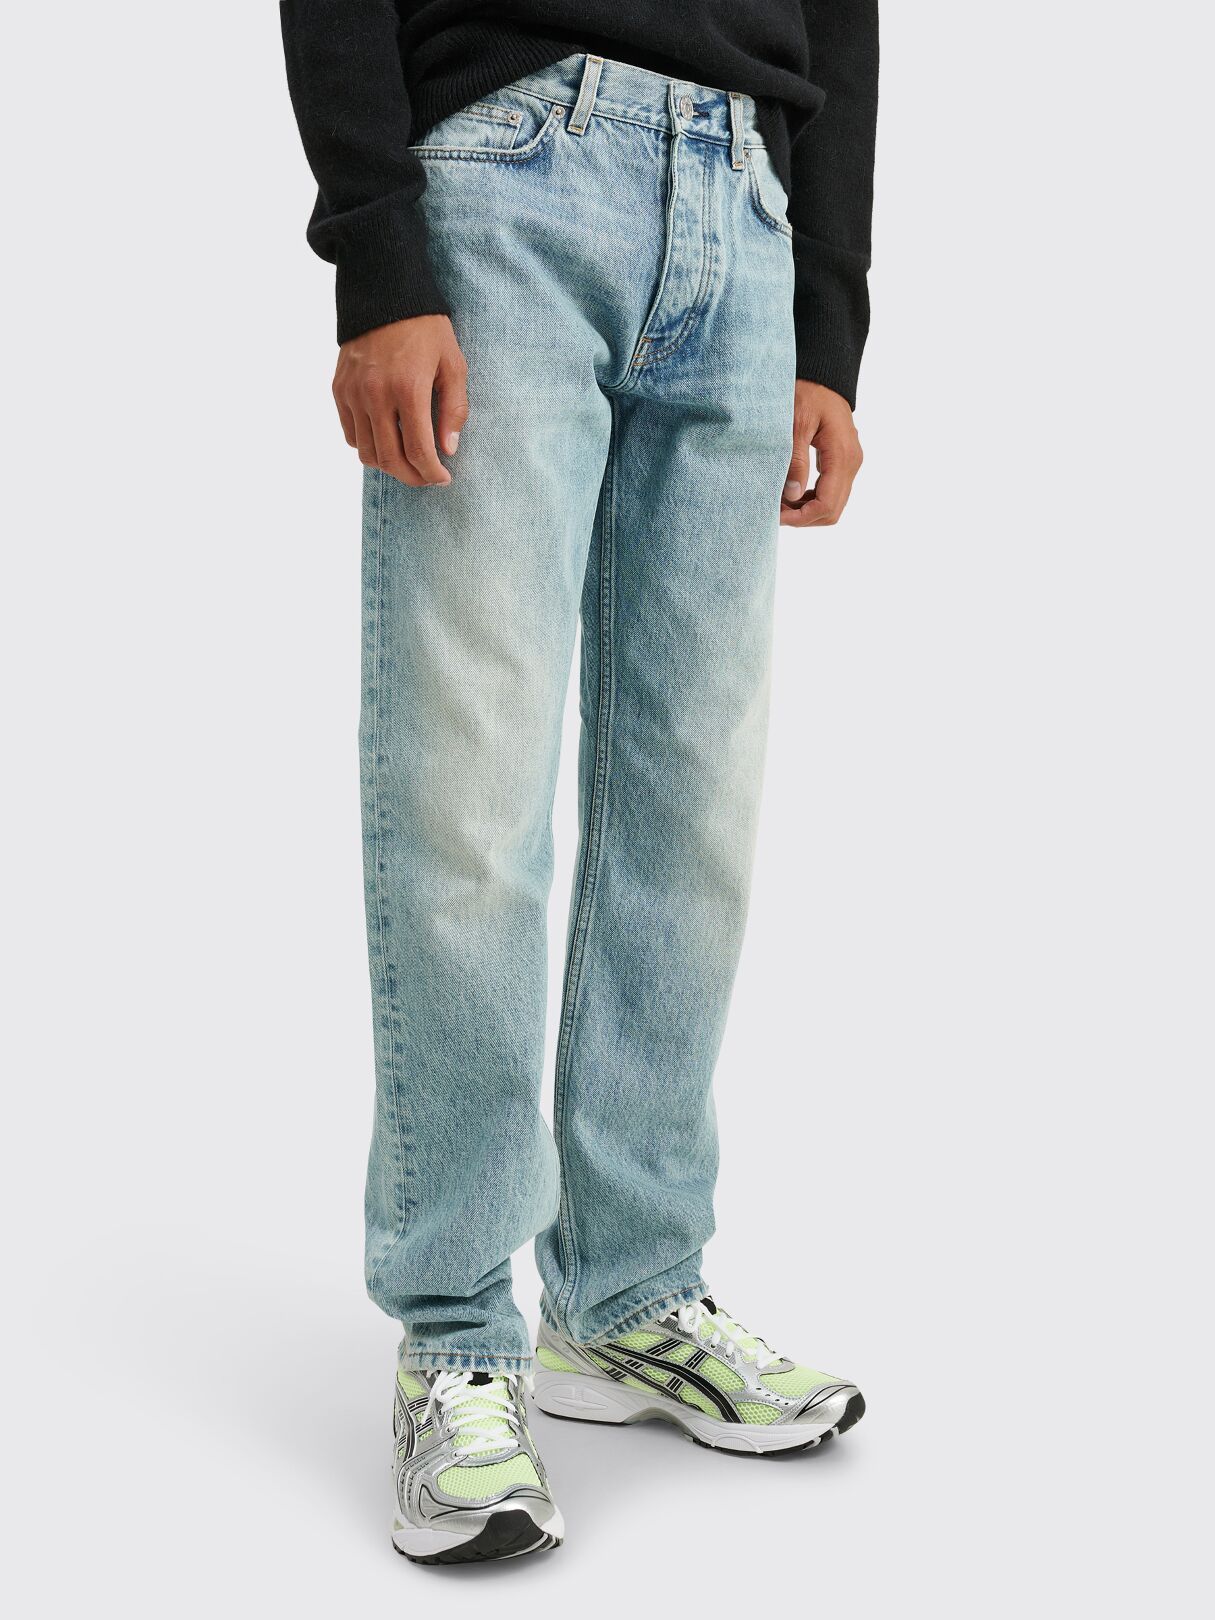 Très Bien - Sunflower Standard Jeans Washed Light Blue